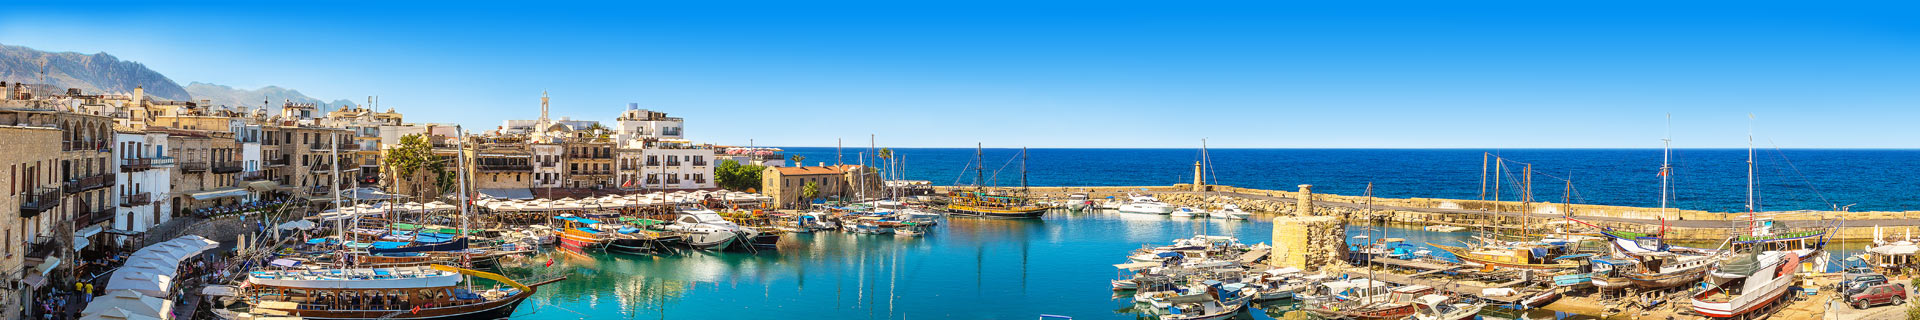 Kan ik op vakantie naar Cyprus?